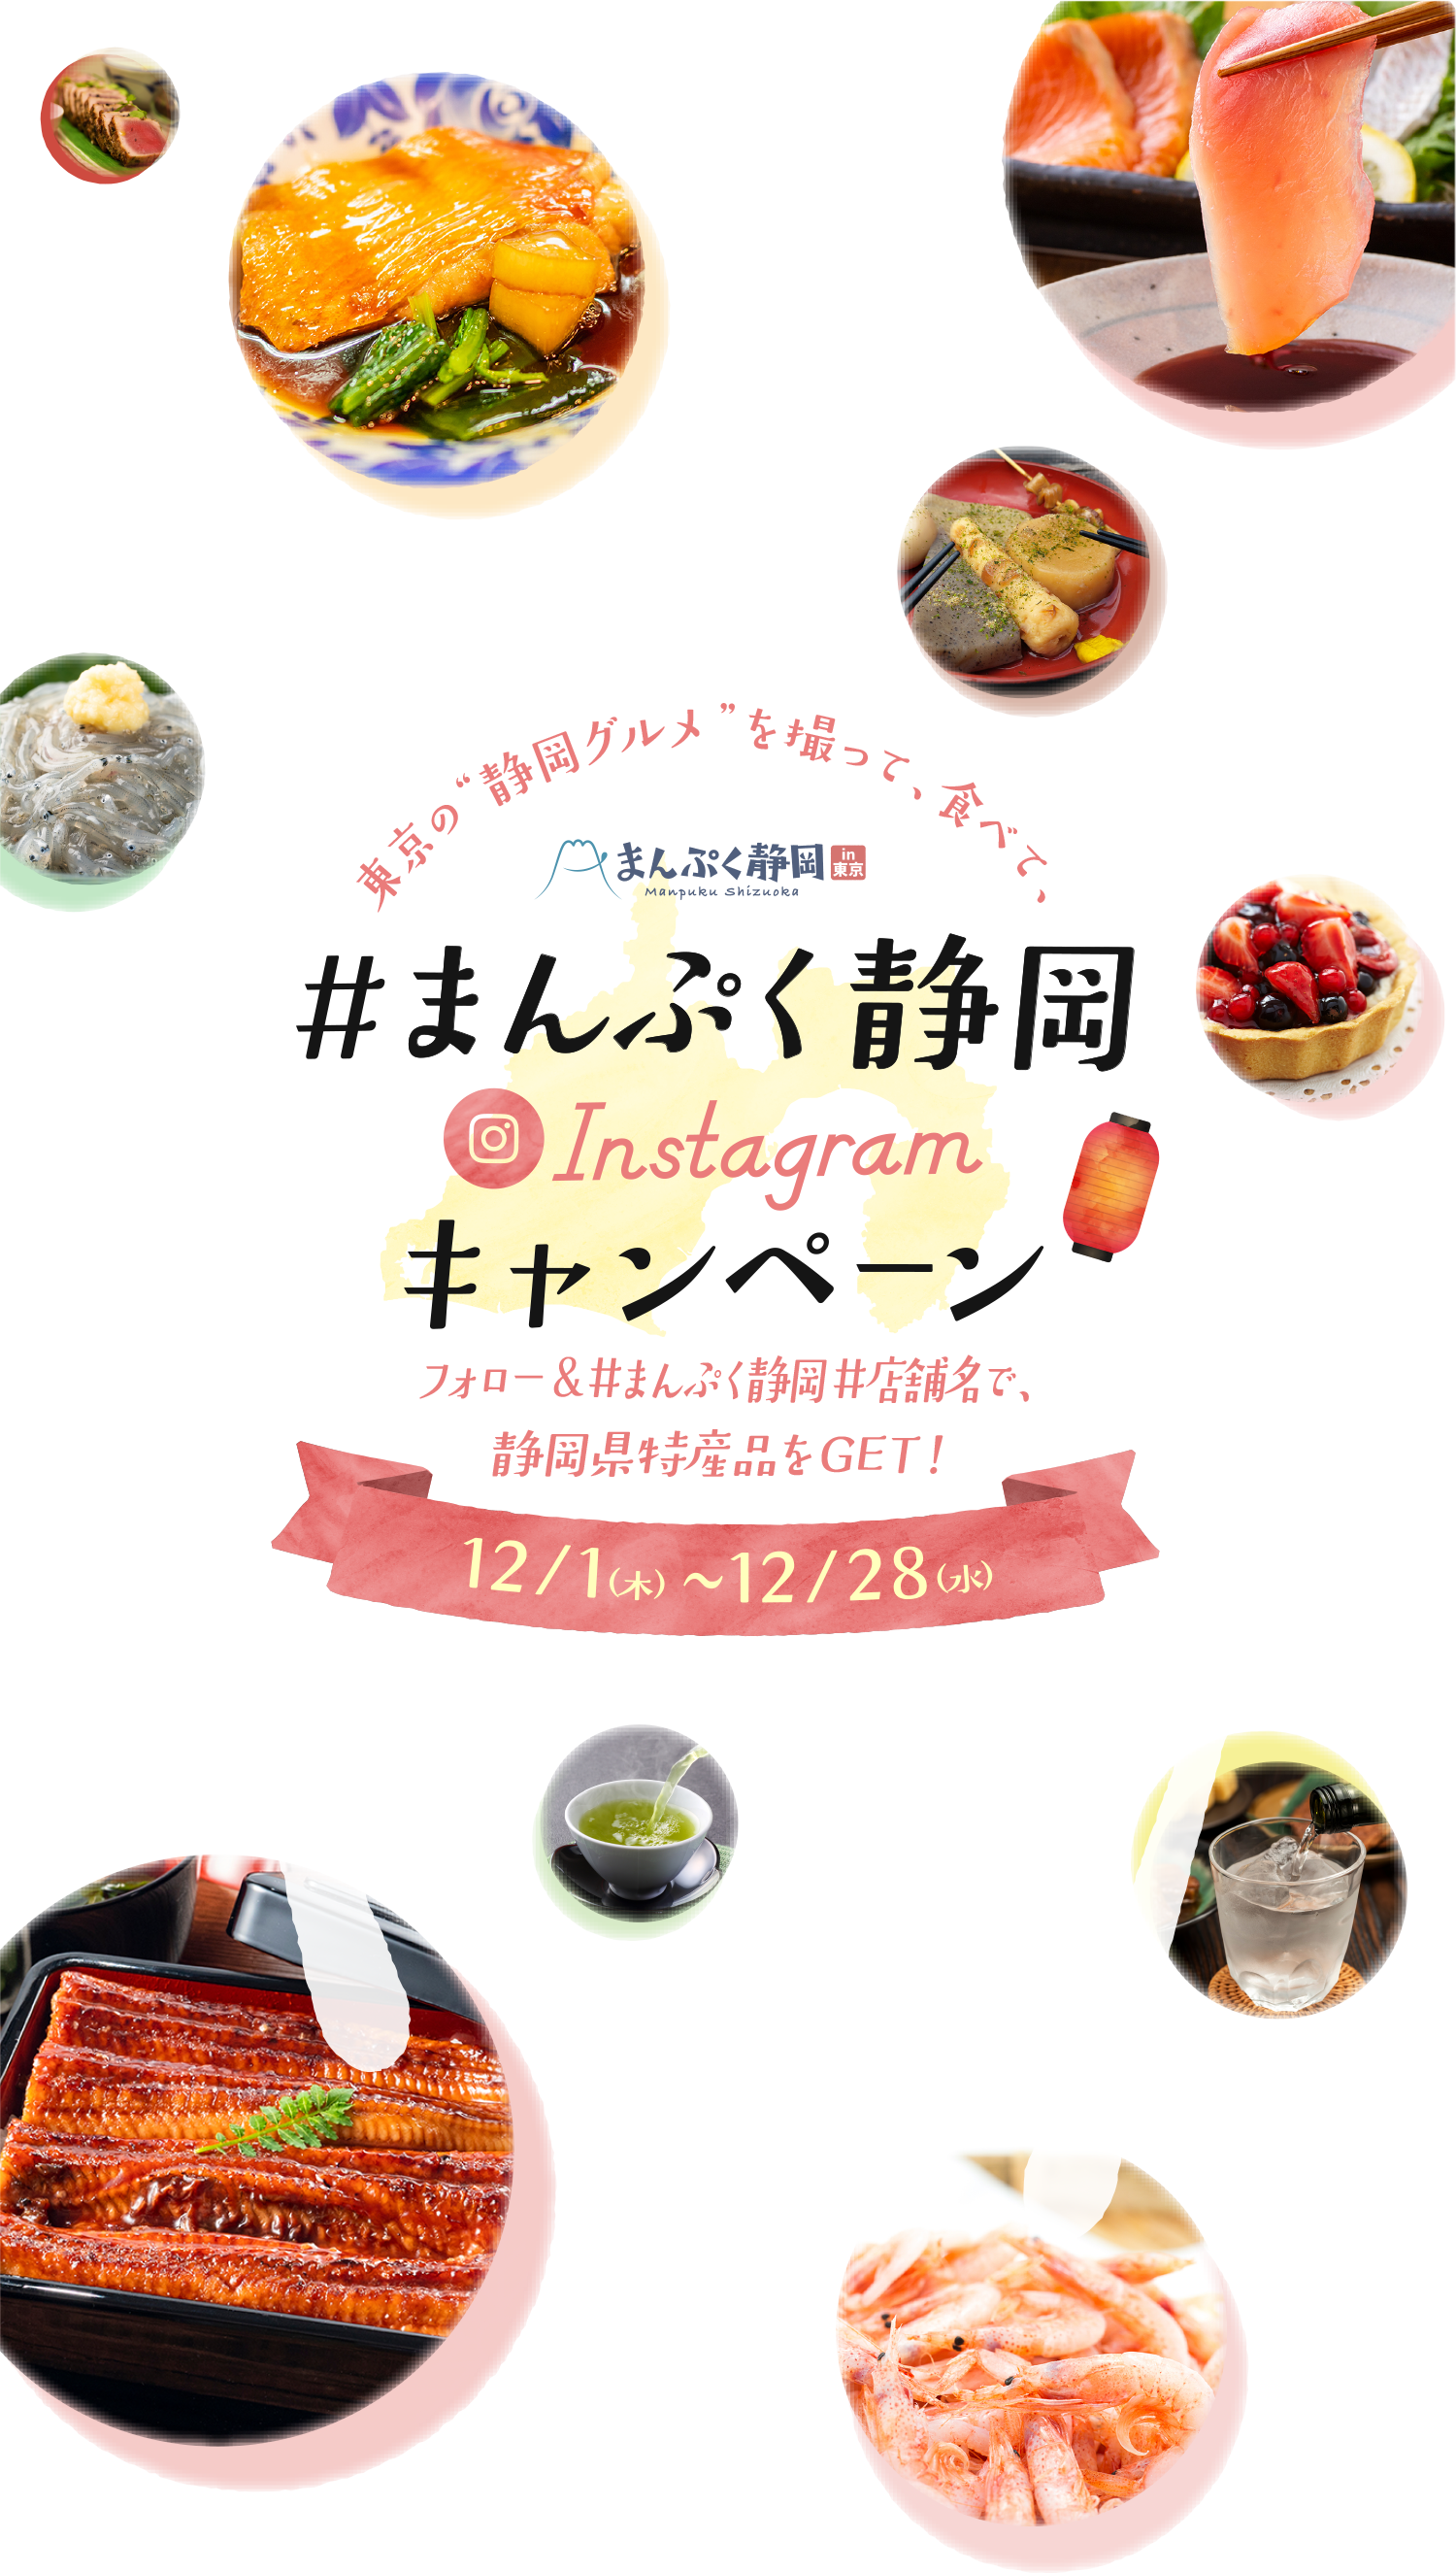 #まんぷく静岡 Instagram キャンペーン フォロー&#まんぷく静岡で、静岡県特産品をGET!